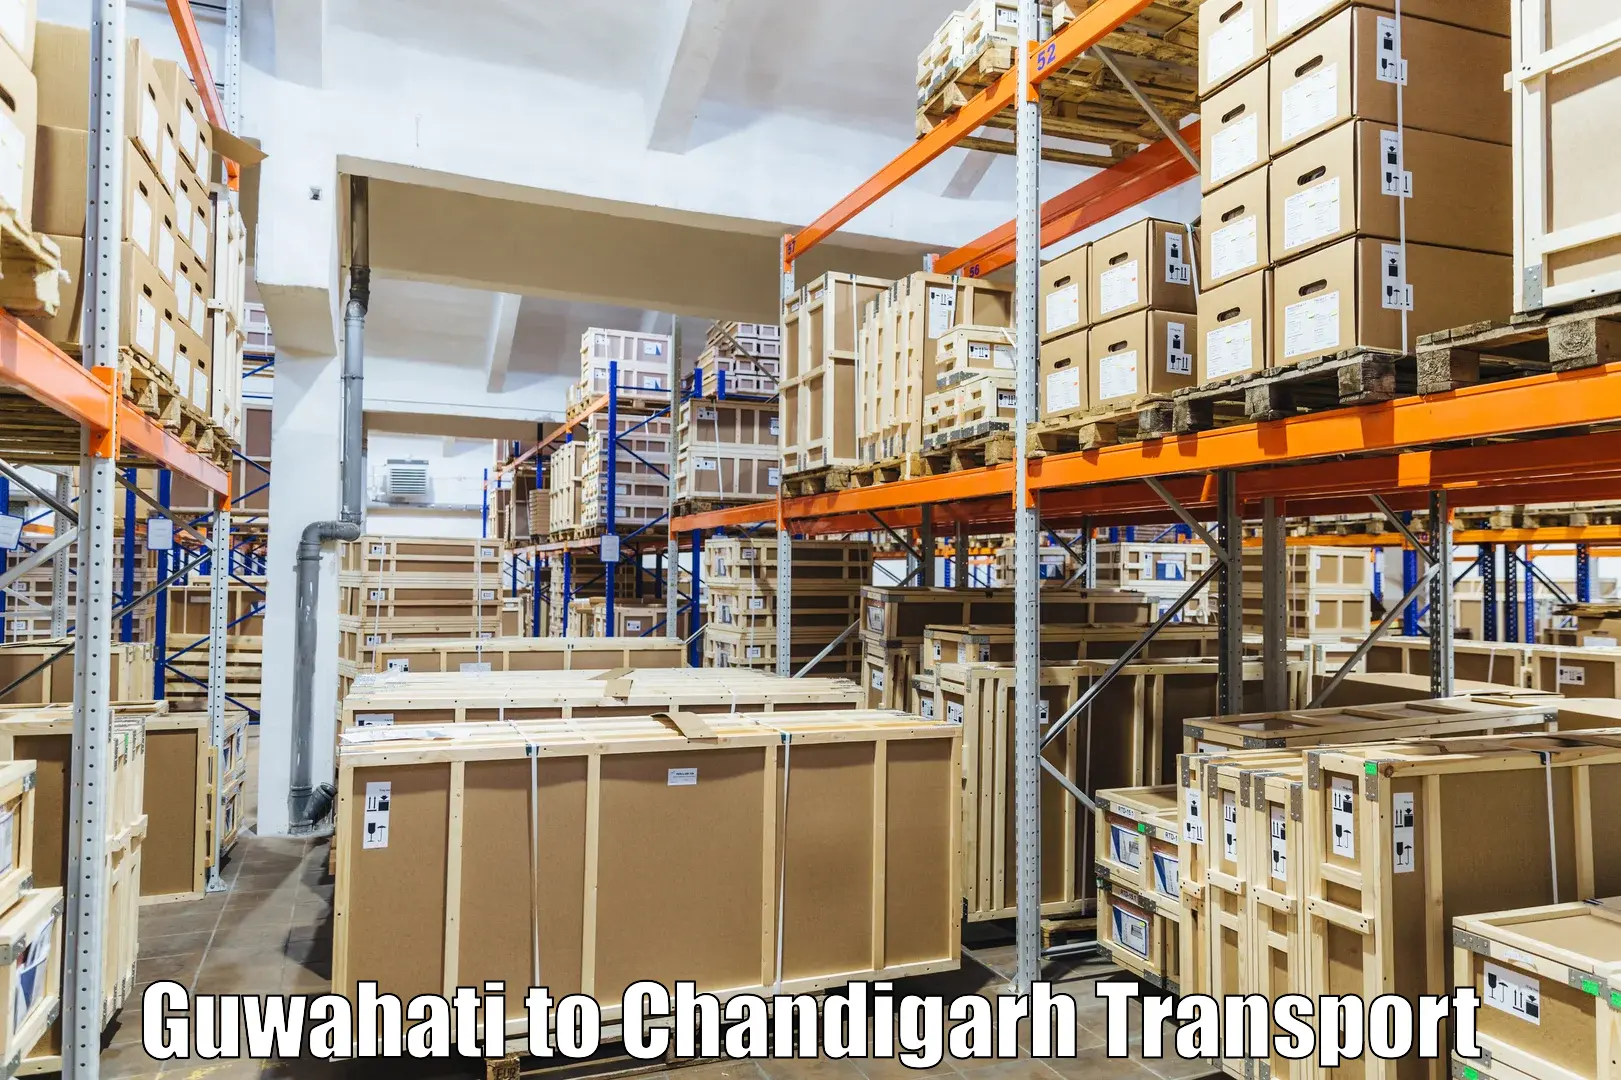 Transport services Guwahati to Chandigarh